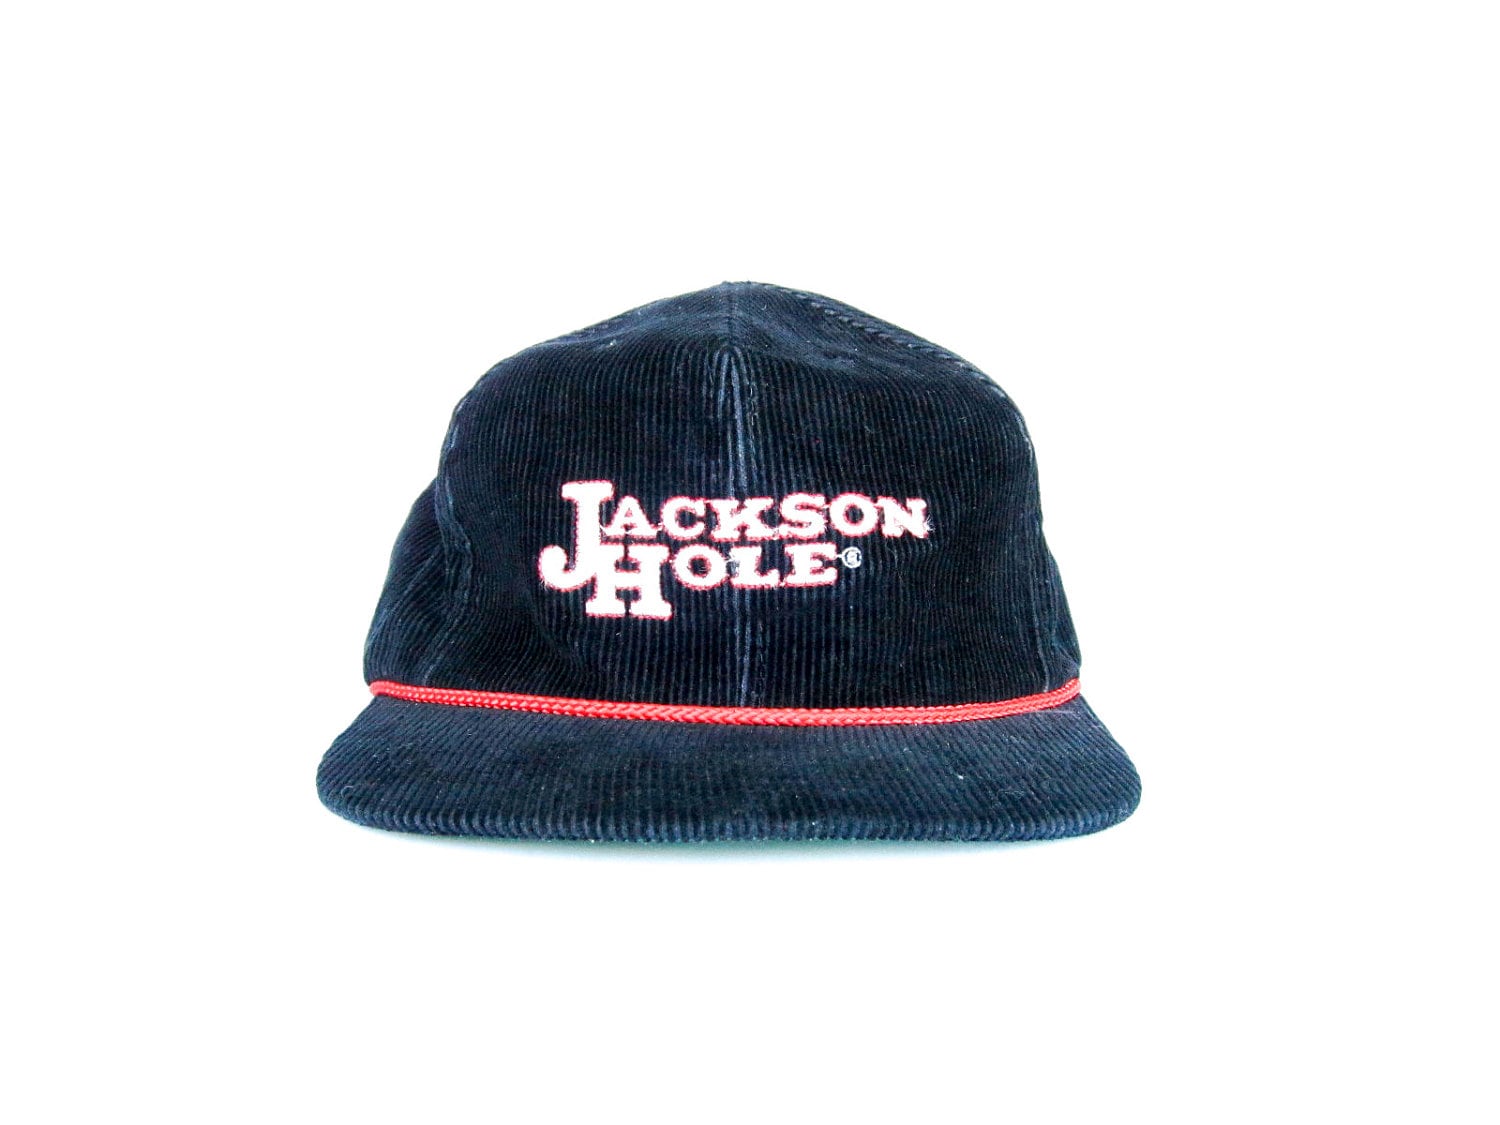 Jackson hole hat